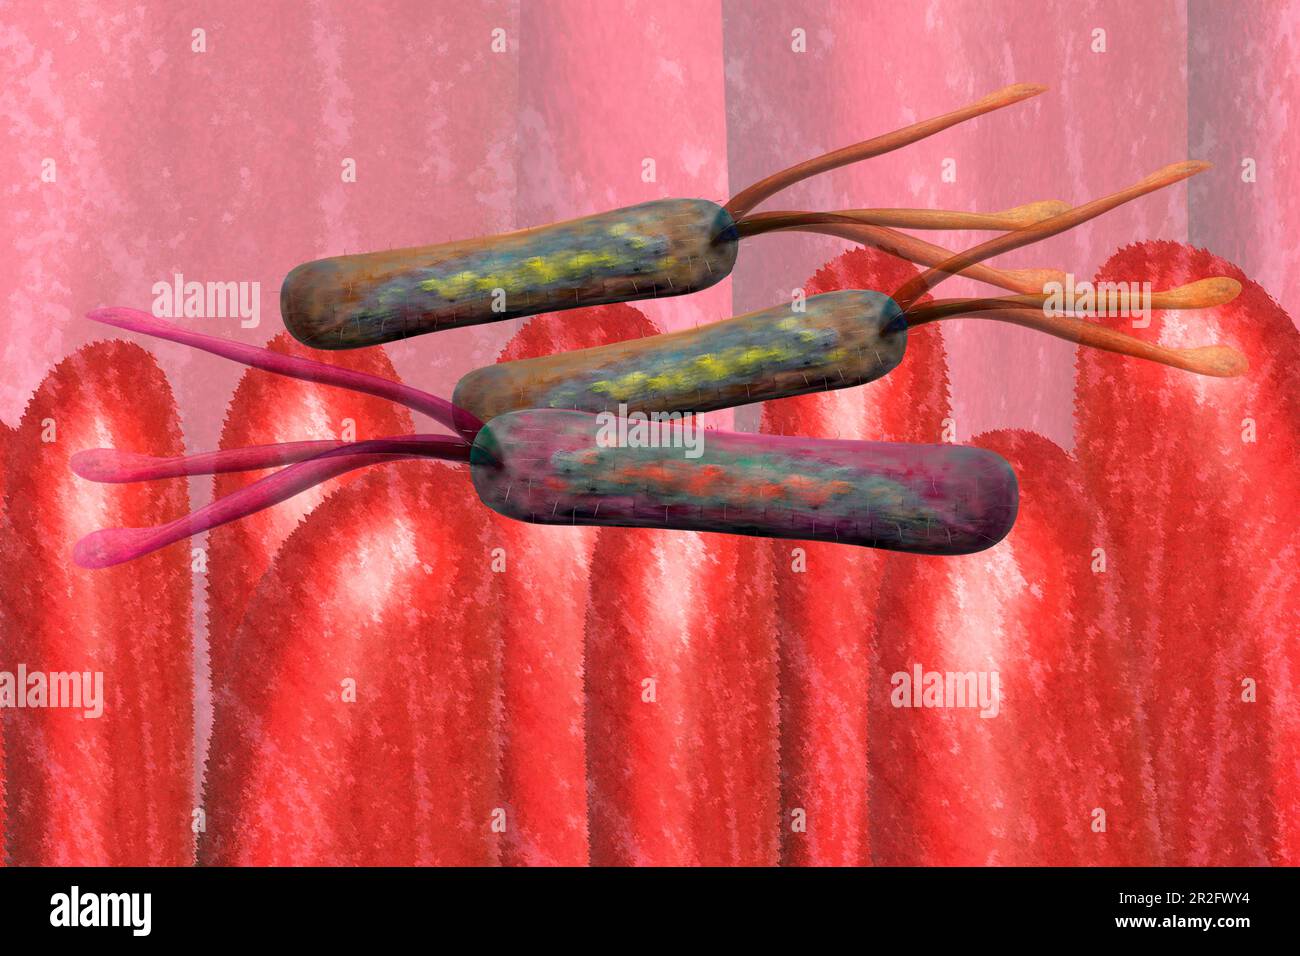 Illustration des bactéries sur les villosités intestinales dans l'intestin les bactéries intestinales favorisant la santé produisent, entre autres choses, des enzymes digestives Banque D'Images